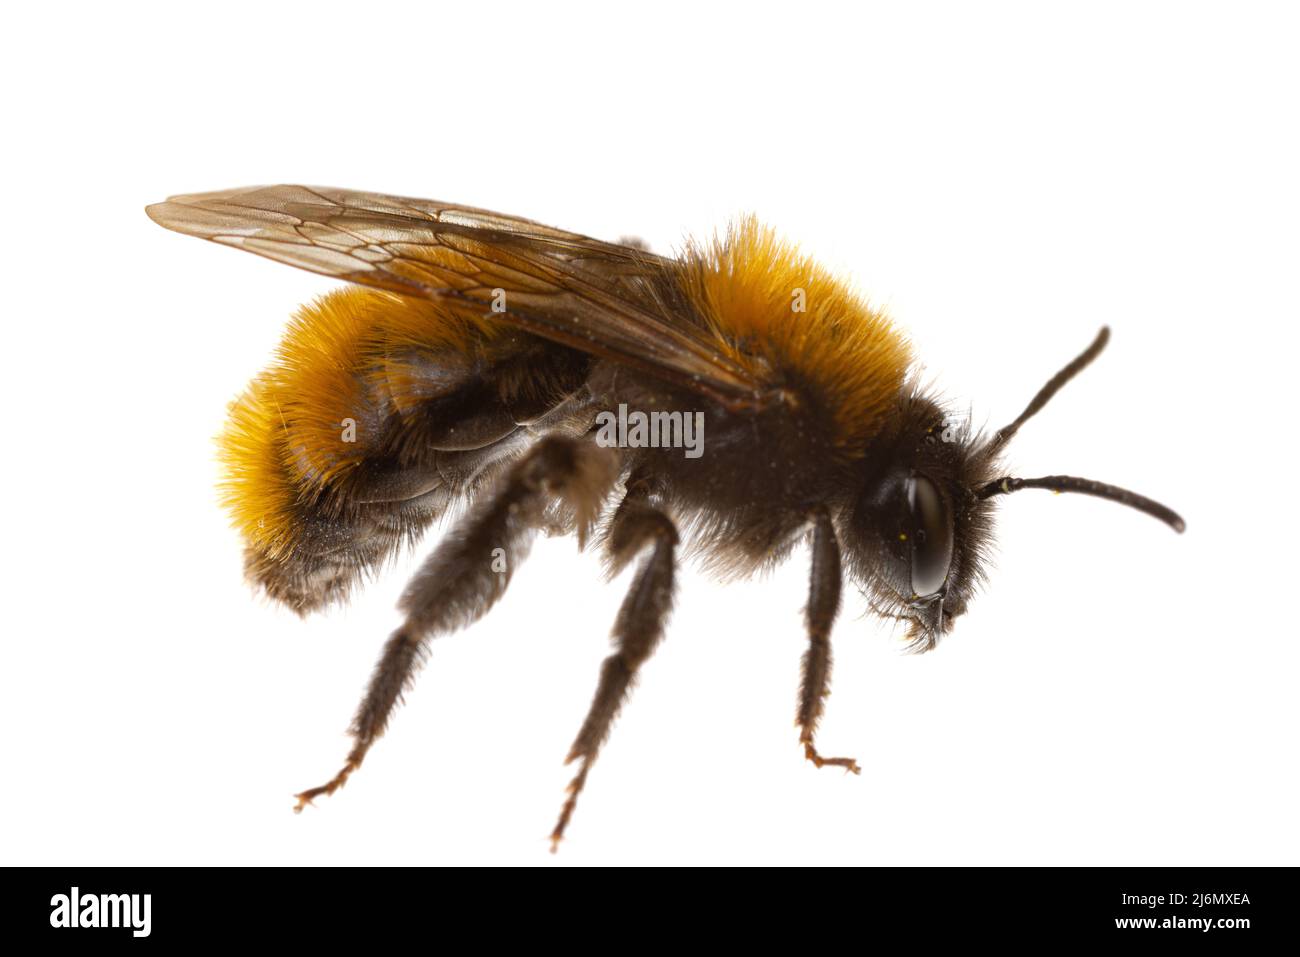 Insects of europe - Bienen: Makro der weiblichen Waldbiene ( Andrena fulva german Rotpelzige Sandbiene) isoliert auf weißem Hintergrund Seitenansicht Stockfoto